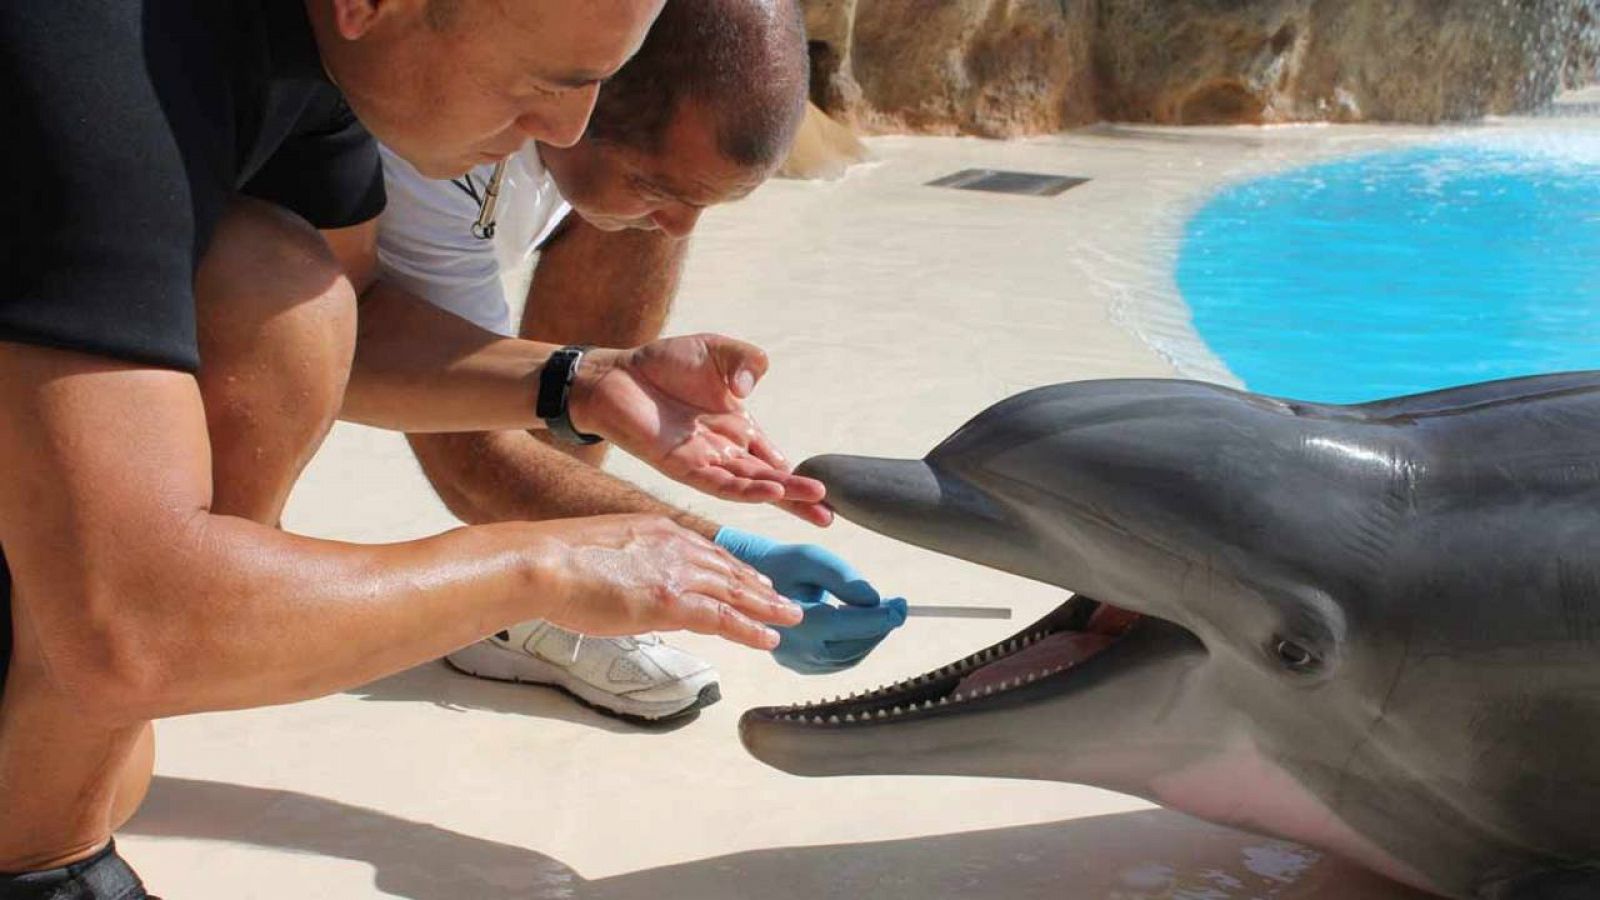 Imagen cedida por Loro Parque (Tenerife), en la que su personal toma muestras de saliva a uno de sus delfines para una investigación